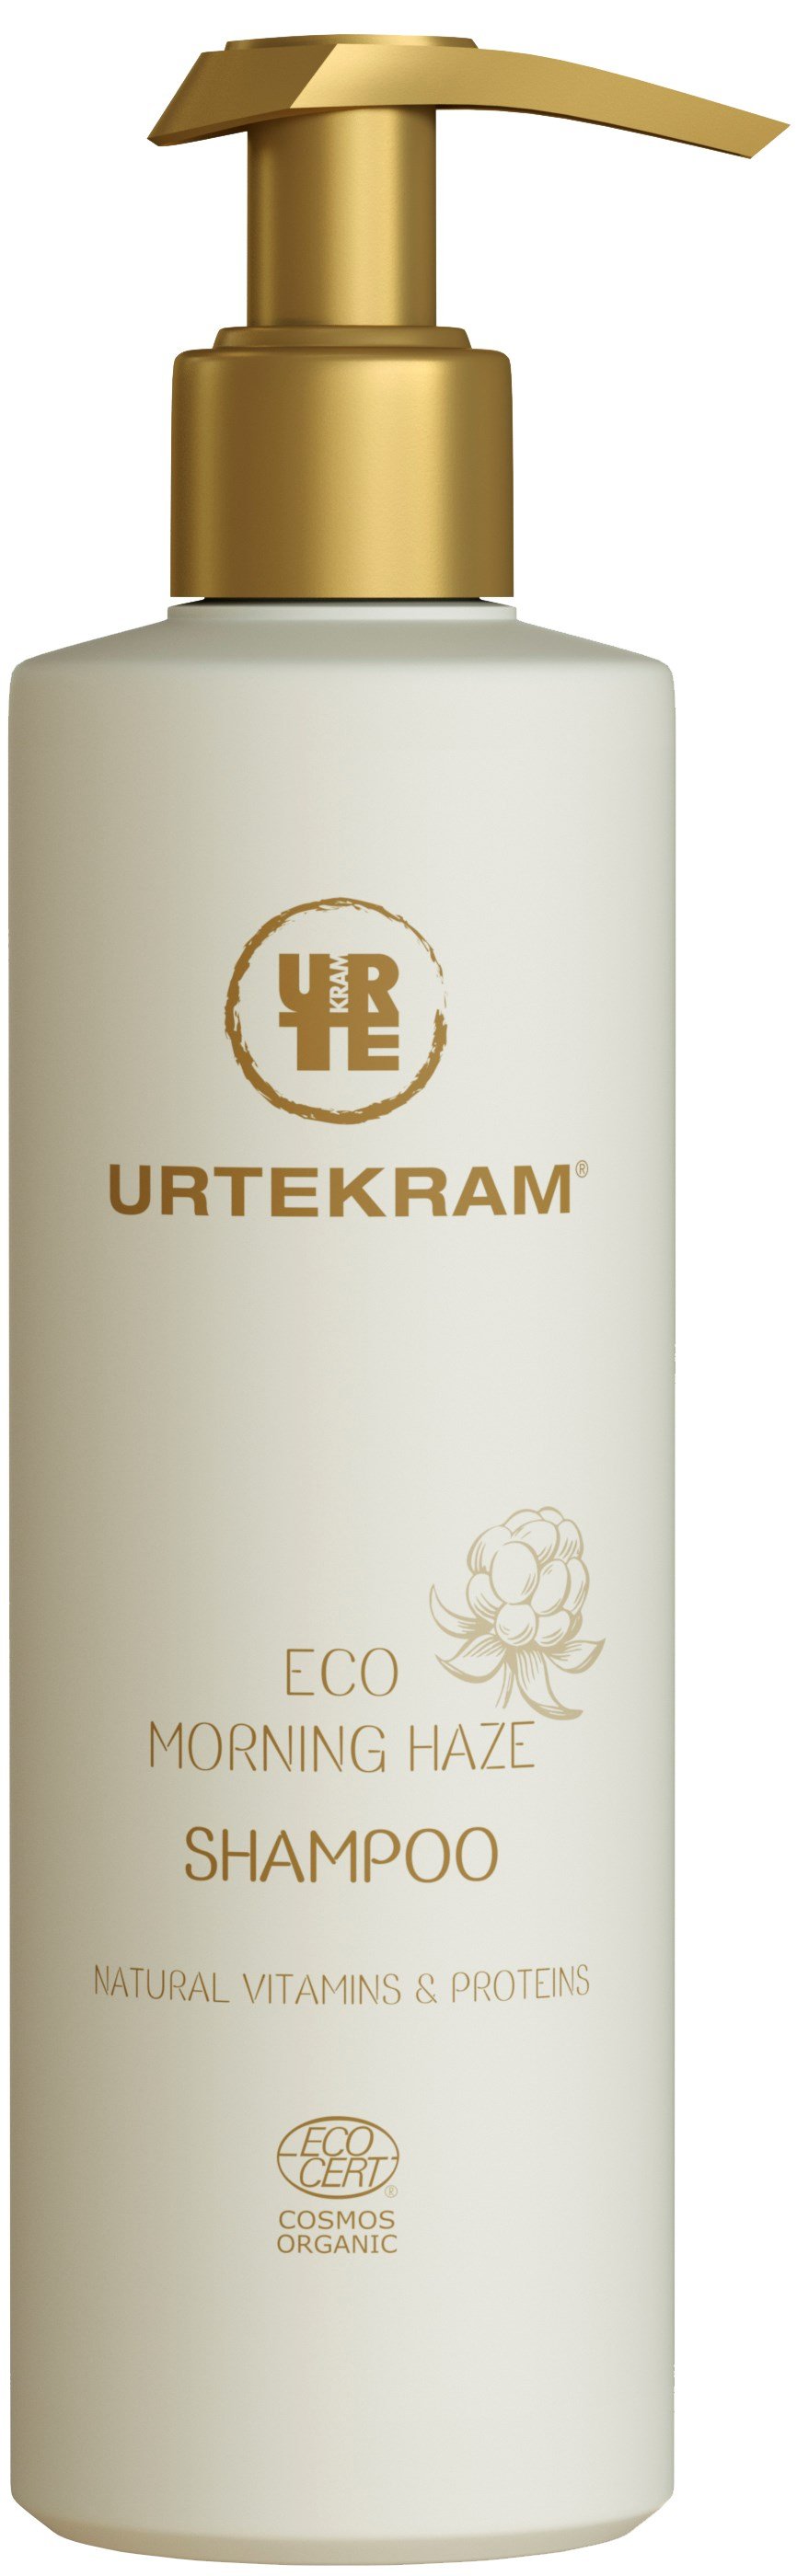 Органічний шампунь Urtekram Ранковий туман, для всіх типів волосся, 245 мл - фото 1